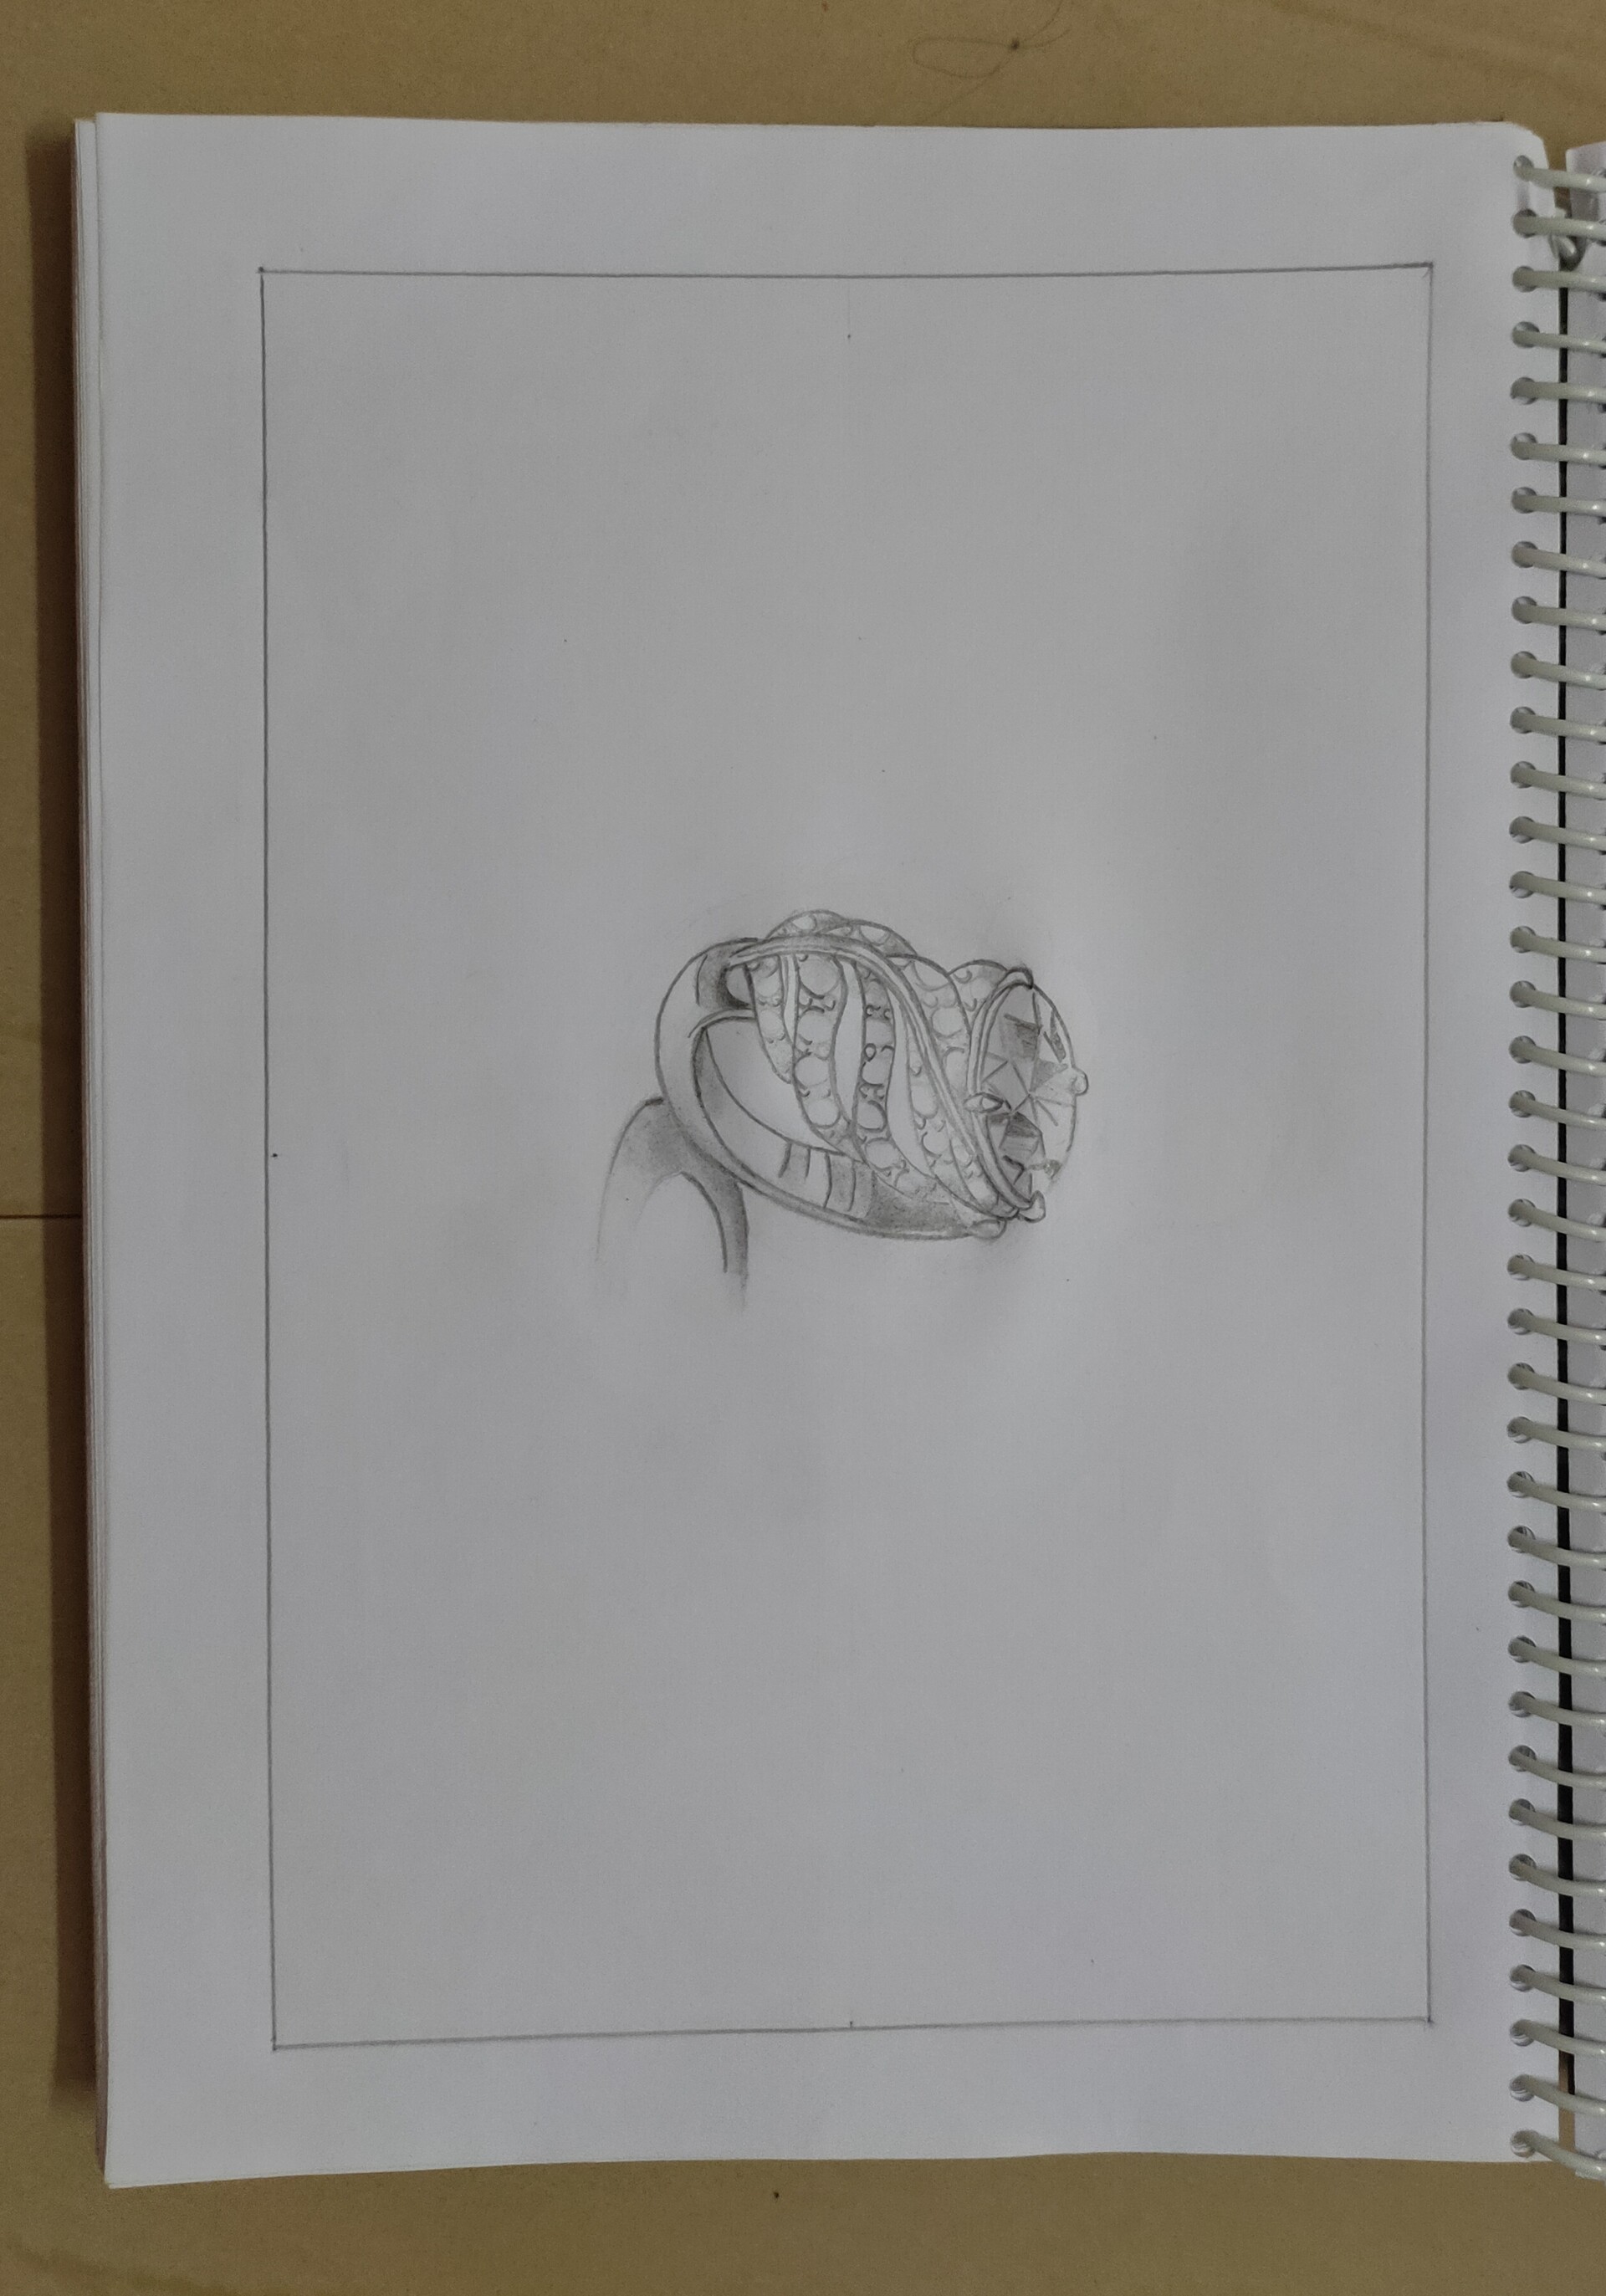 Jewelry Design : How to sketch rings _ Part 1 | Wassima Karani | Skillshare